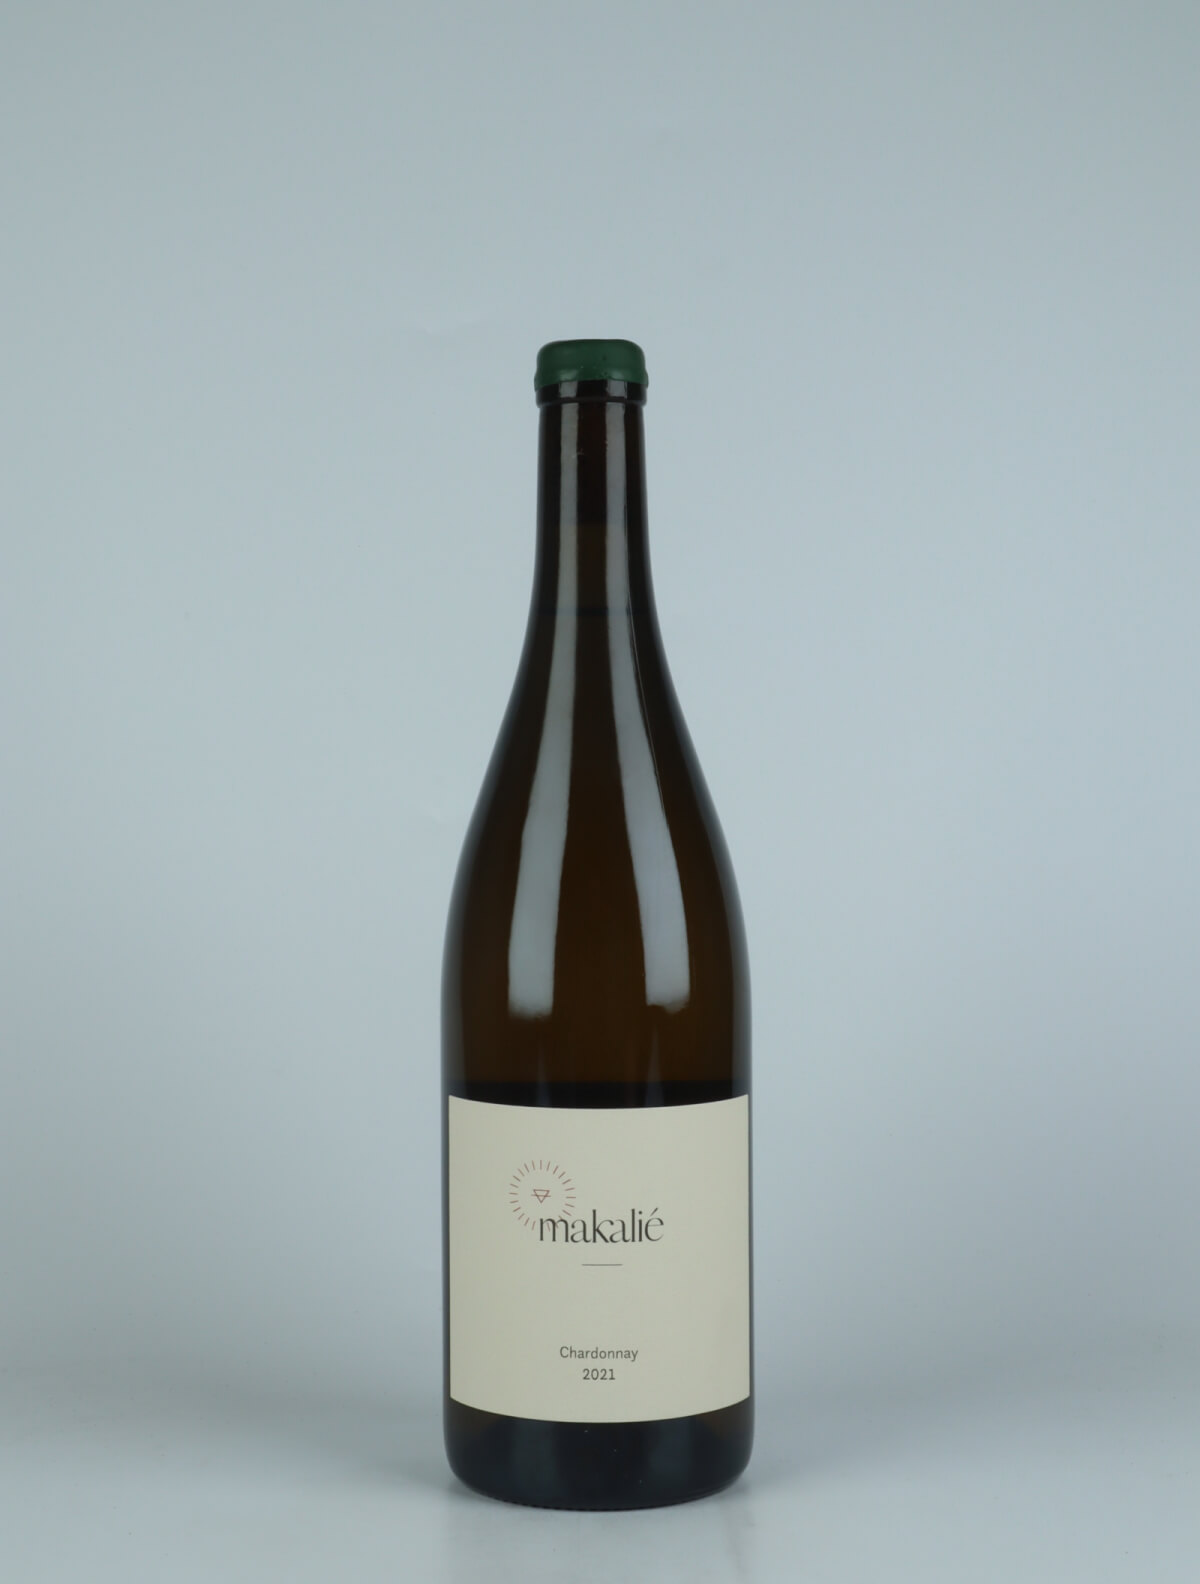 En flaske 2021 Chardonnay Hvidvin fra Makalié, Baden i Tyskland